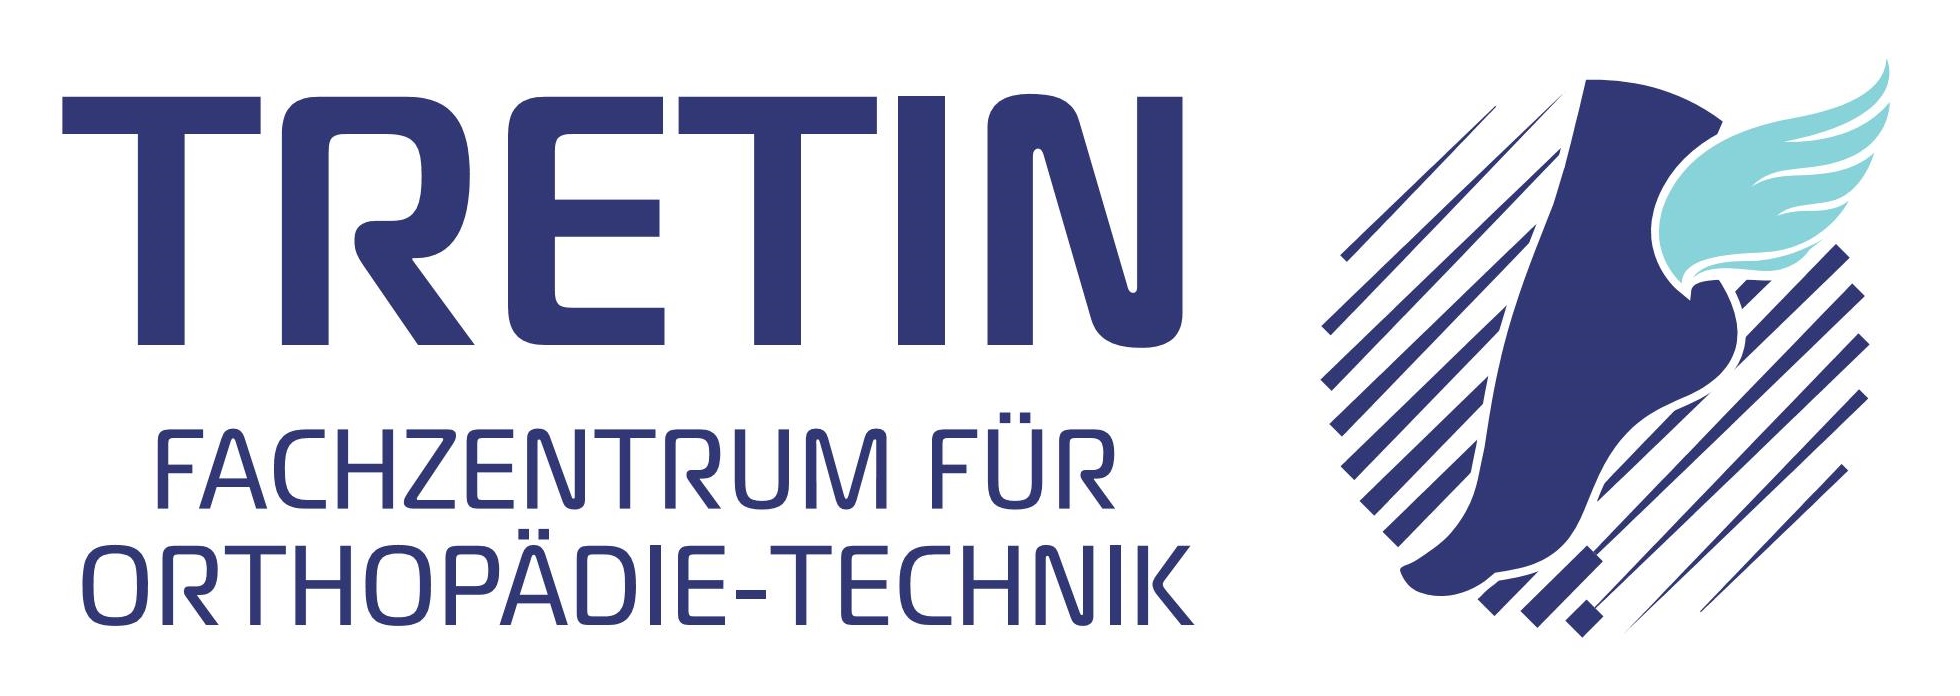 Orthopädieschuhtechnik Tretin GmbH